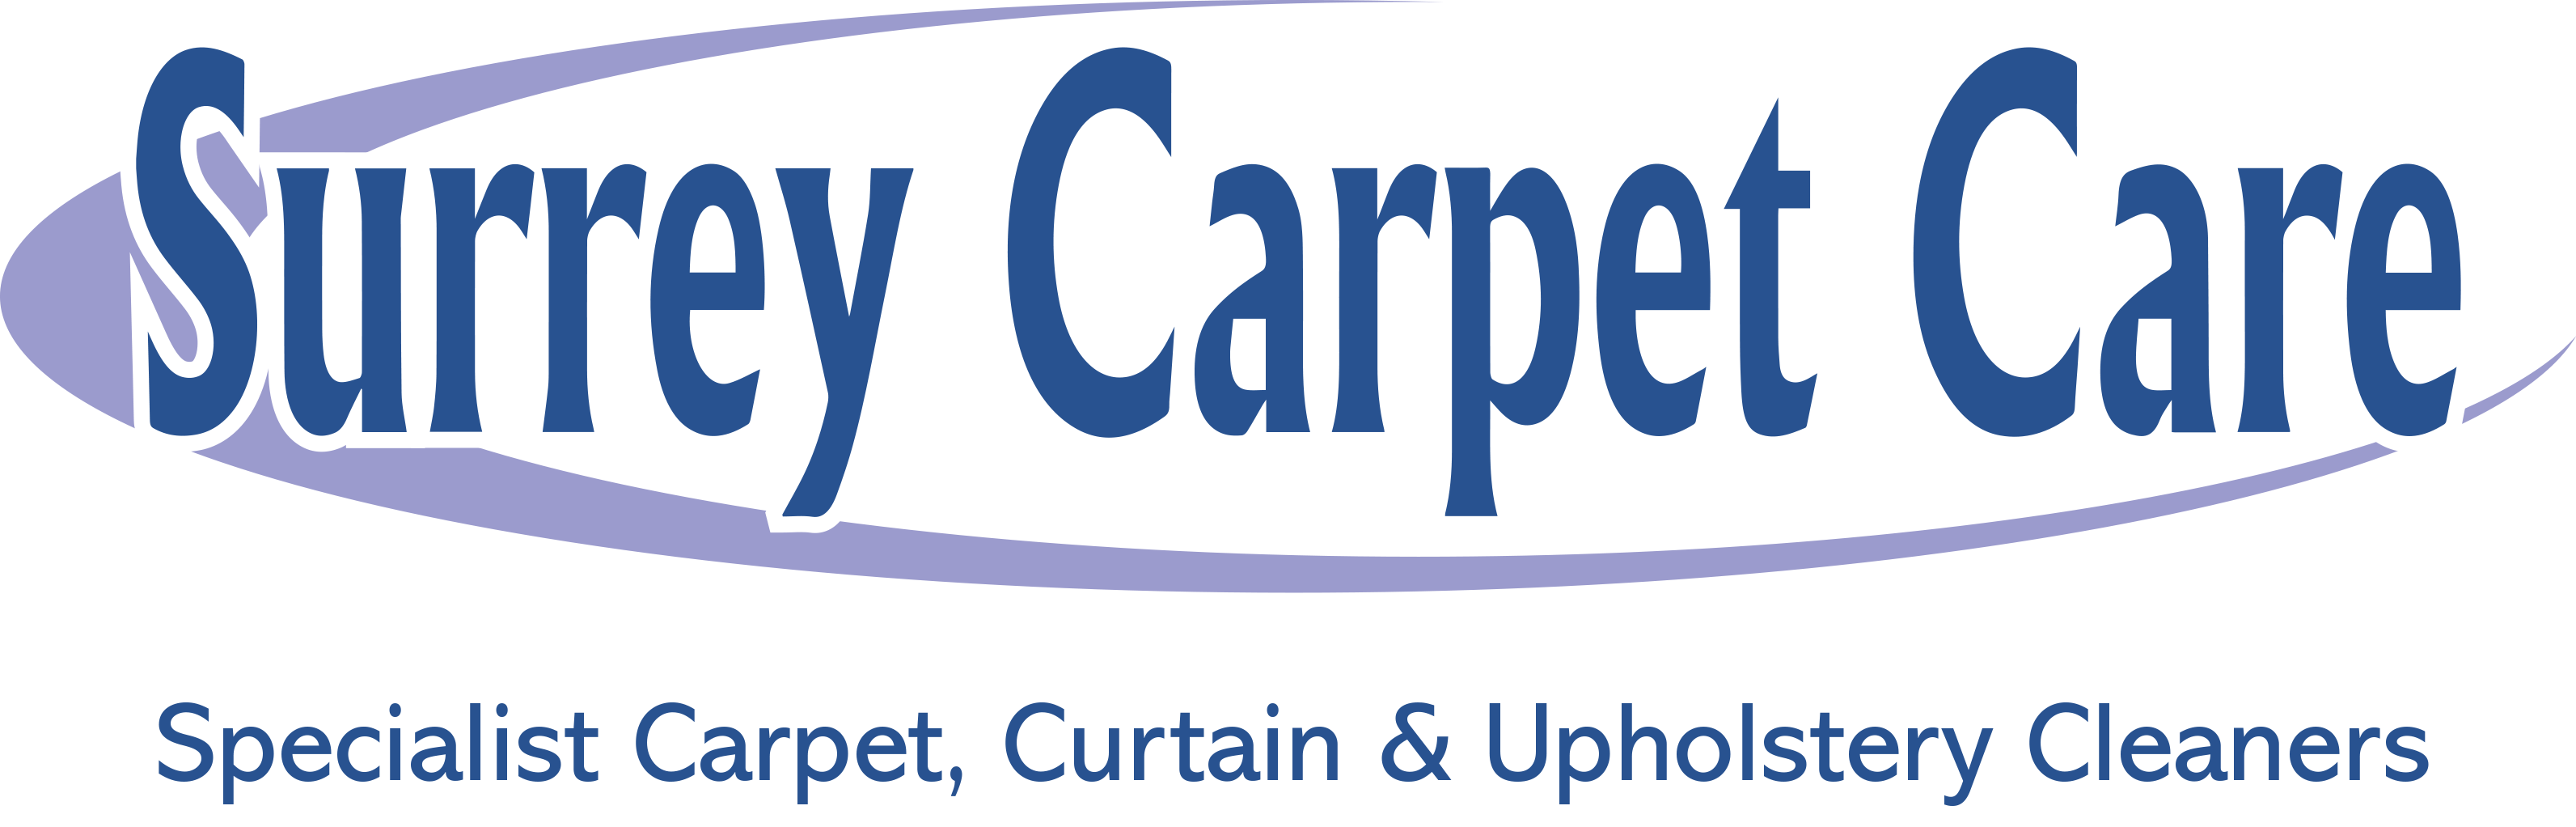 Surrey Carpet Care (1)